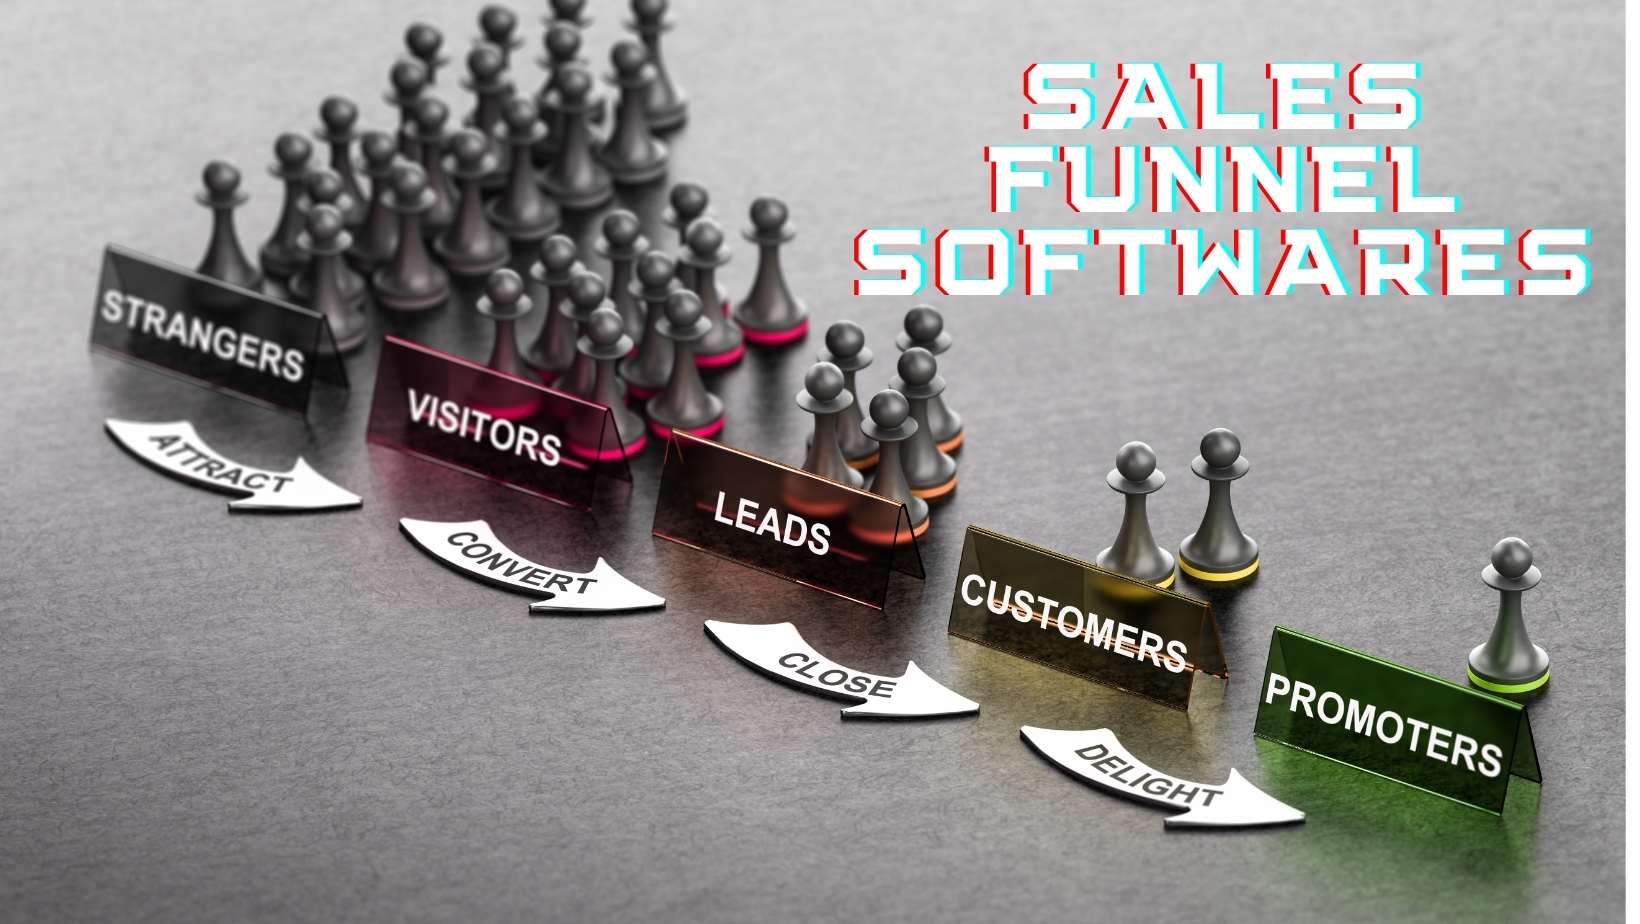 sales funnel softwares-min